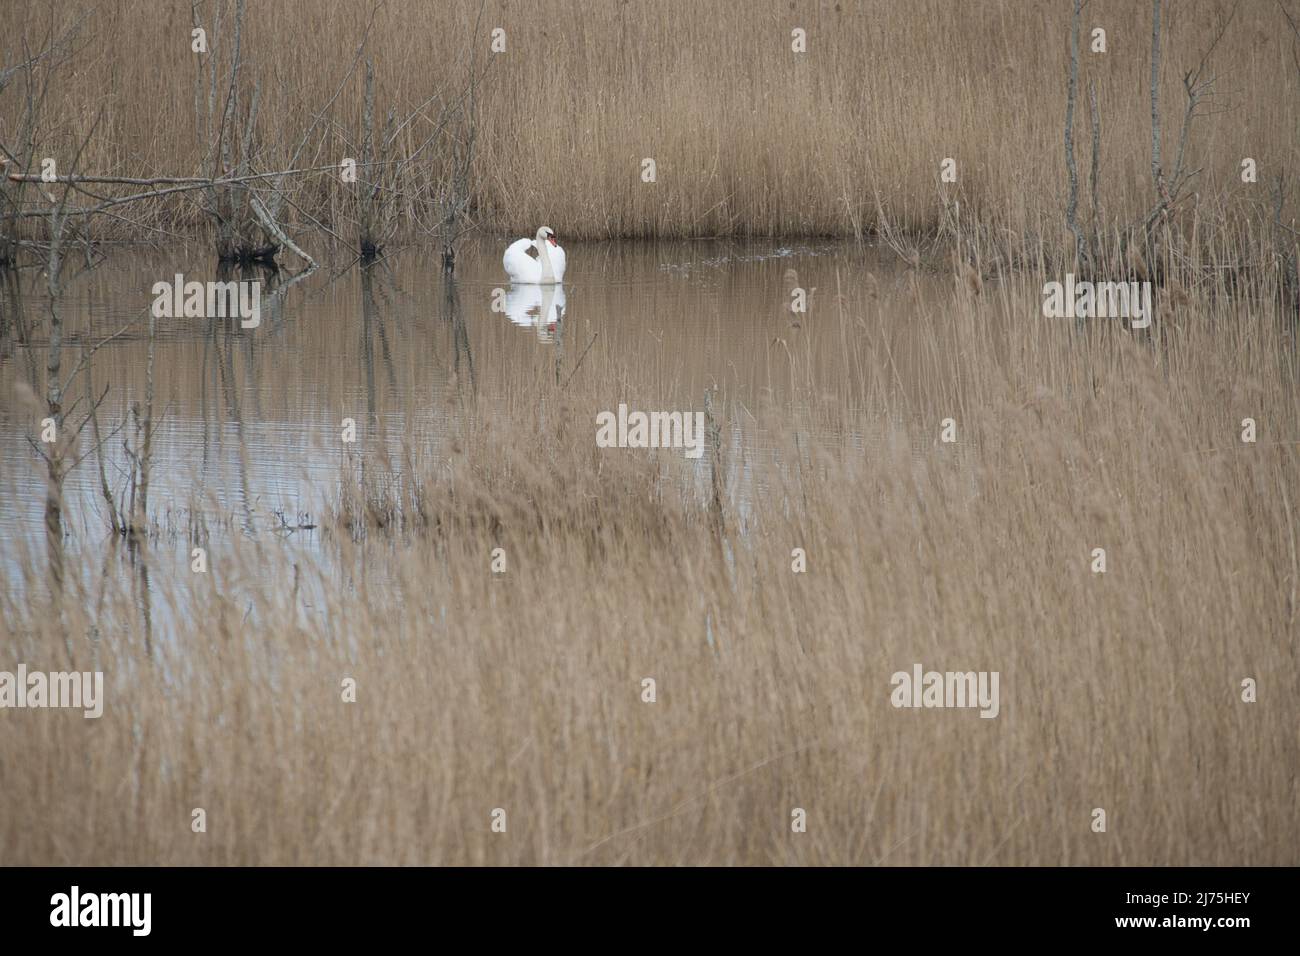 swan nel parco naturale darss. tempo di accoppiamento degli uccelli. cigni muti con piumaggio bianco. foto degli animali nella natura Foto Stock